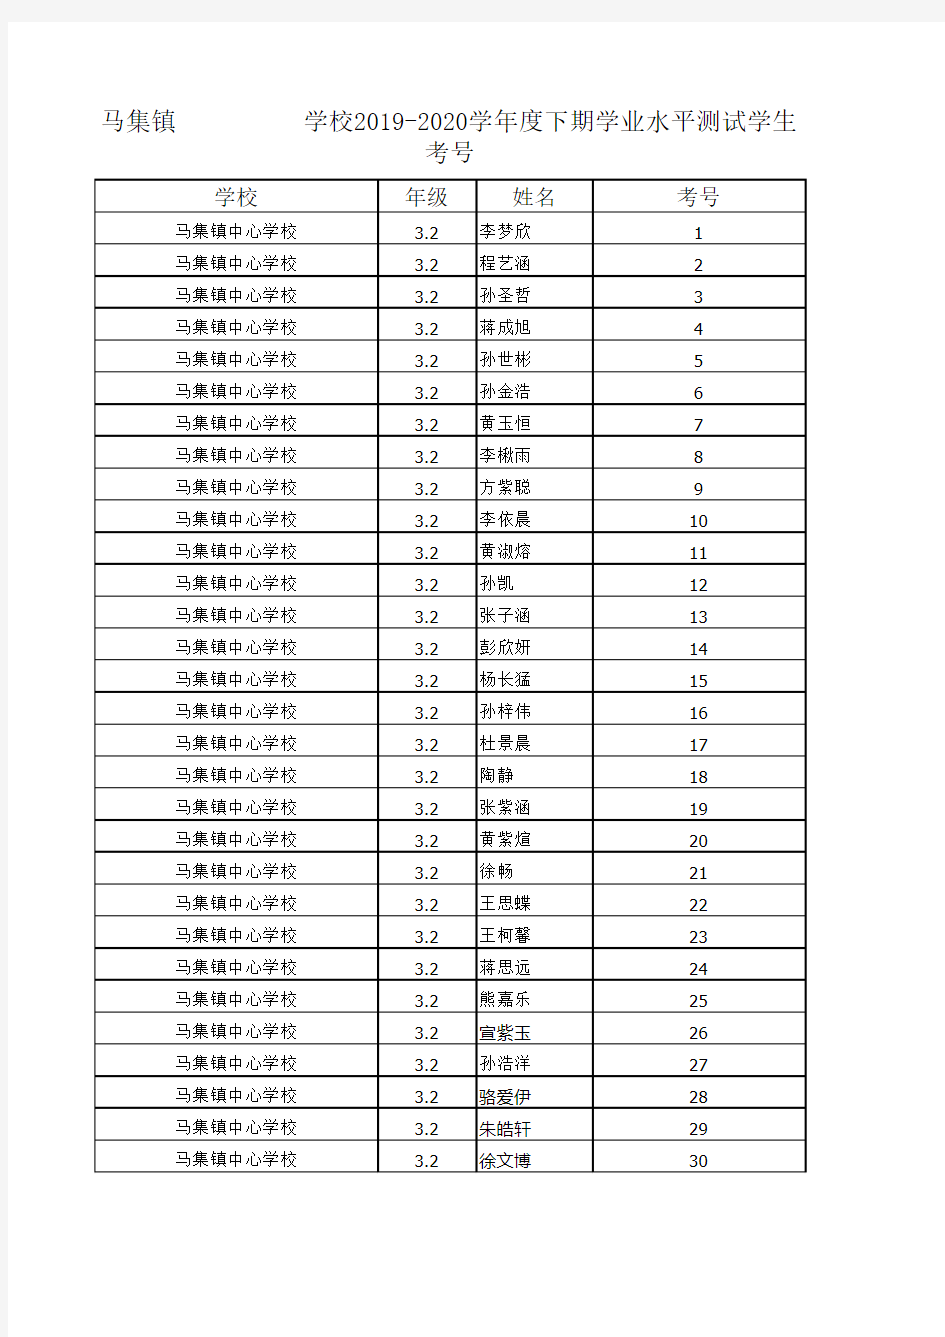 期末考试考场编排 (9)